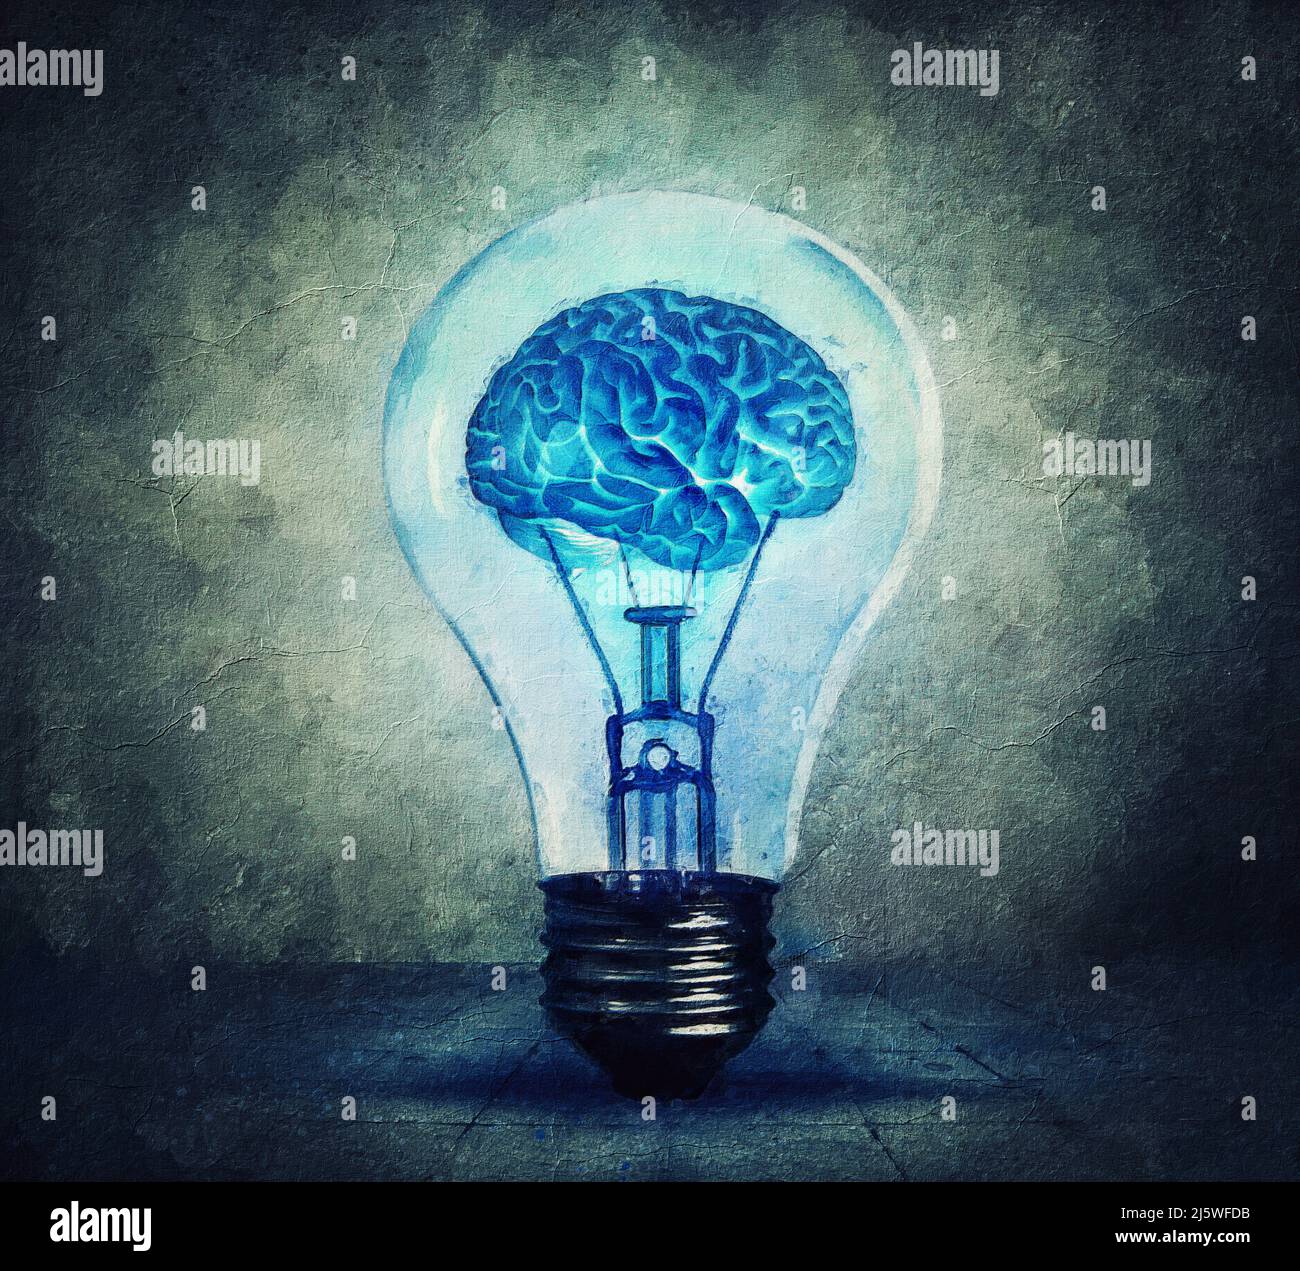 Surreale Glühbirne Malerei mit einem glühenden Gehirn im Inneren. Blaue Glühbirne, menschliche Kreativität und Ideenkonzept. Geistige Entwicklung, die Energie des Geistes Stockfoto